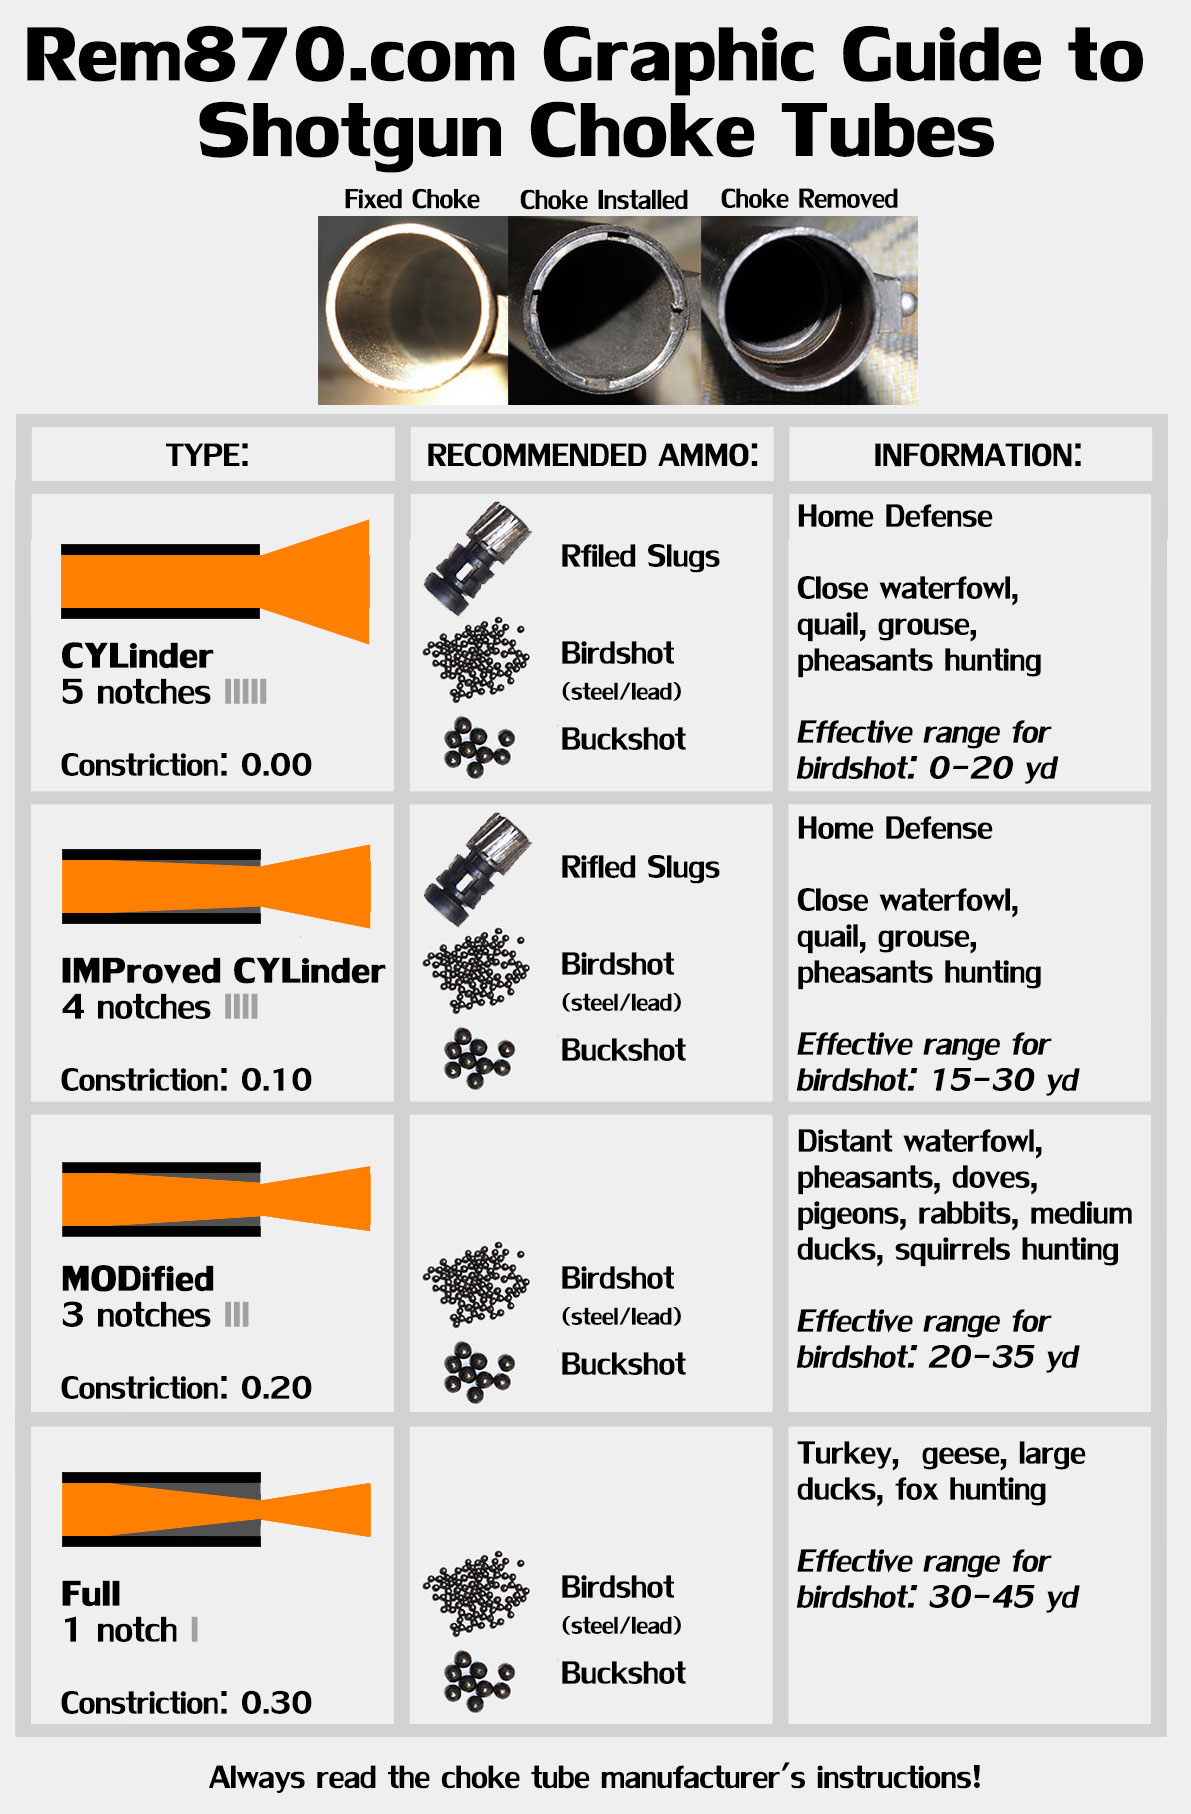 Shotgun Chokes Explained (Cylinder, Improved Cylinder, Modified, Full)